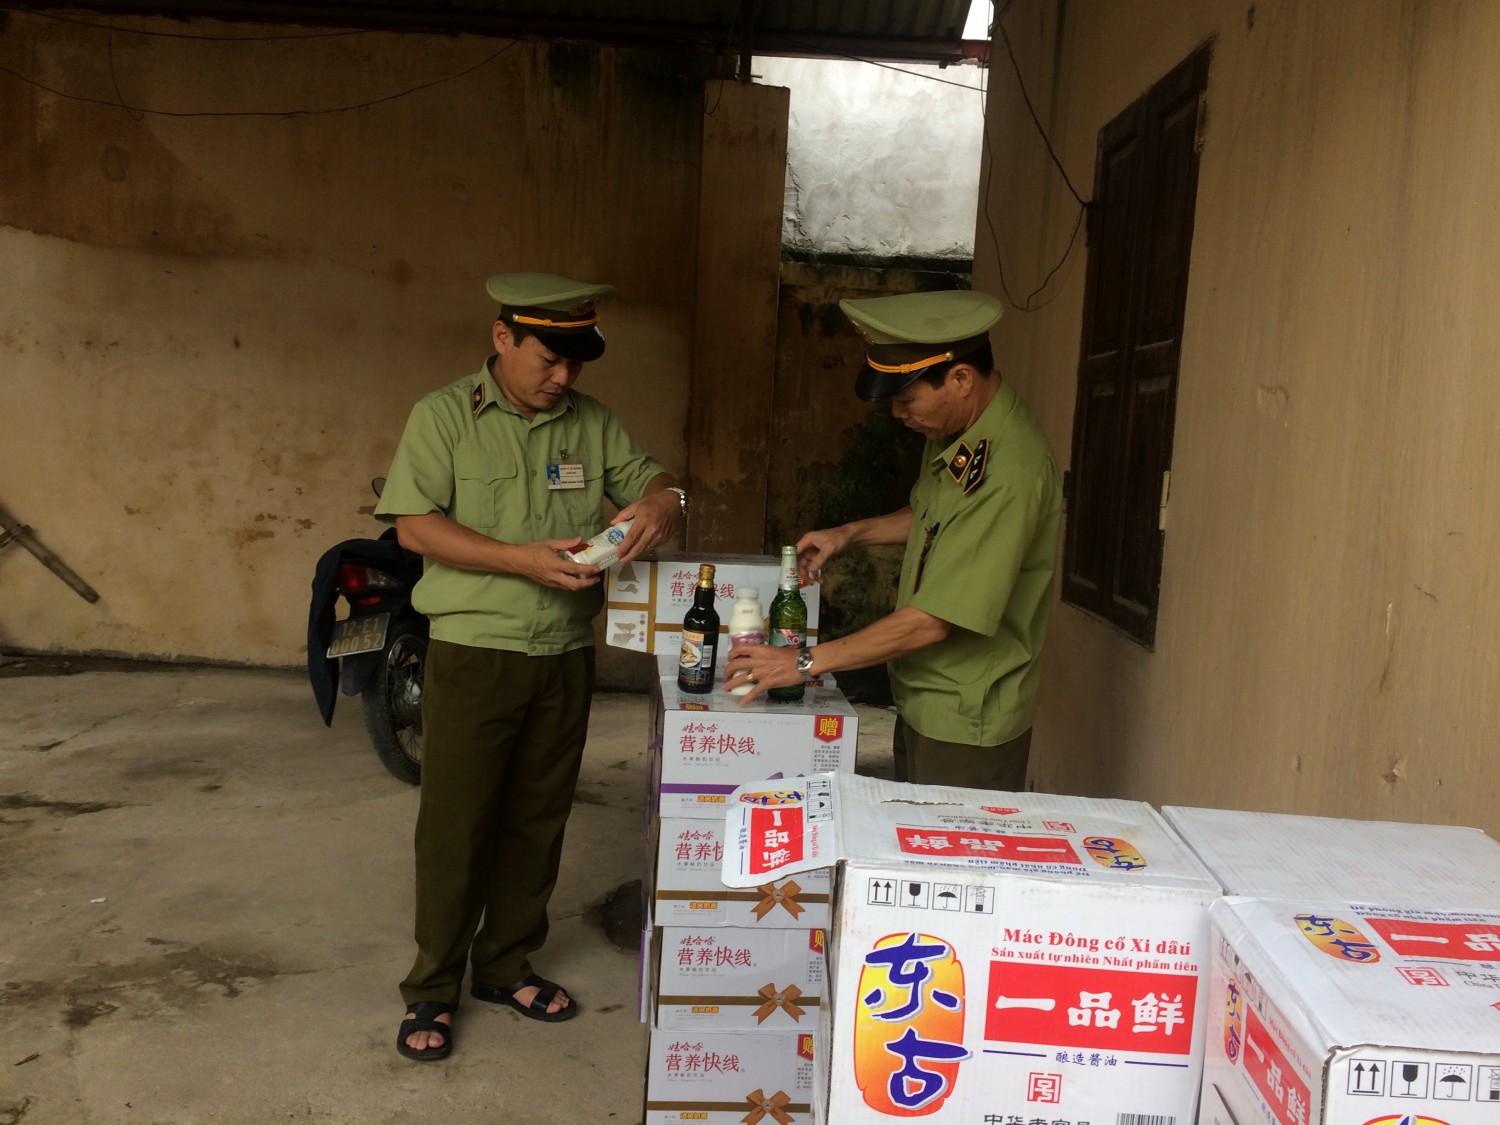  Đội Quản lý thị trường số 4 tỉnh Lạng Sơn tịch thu toàn bộ sản phẩm, thực phẩm nhập lậu